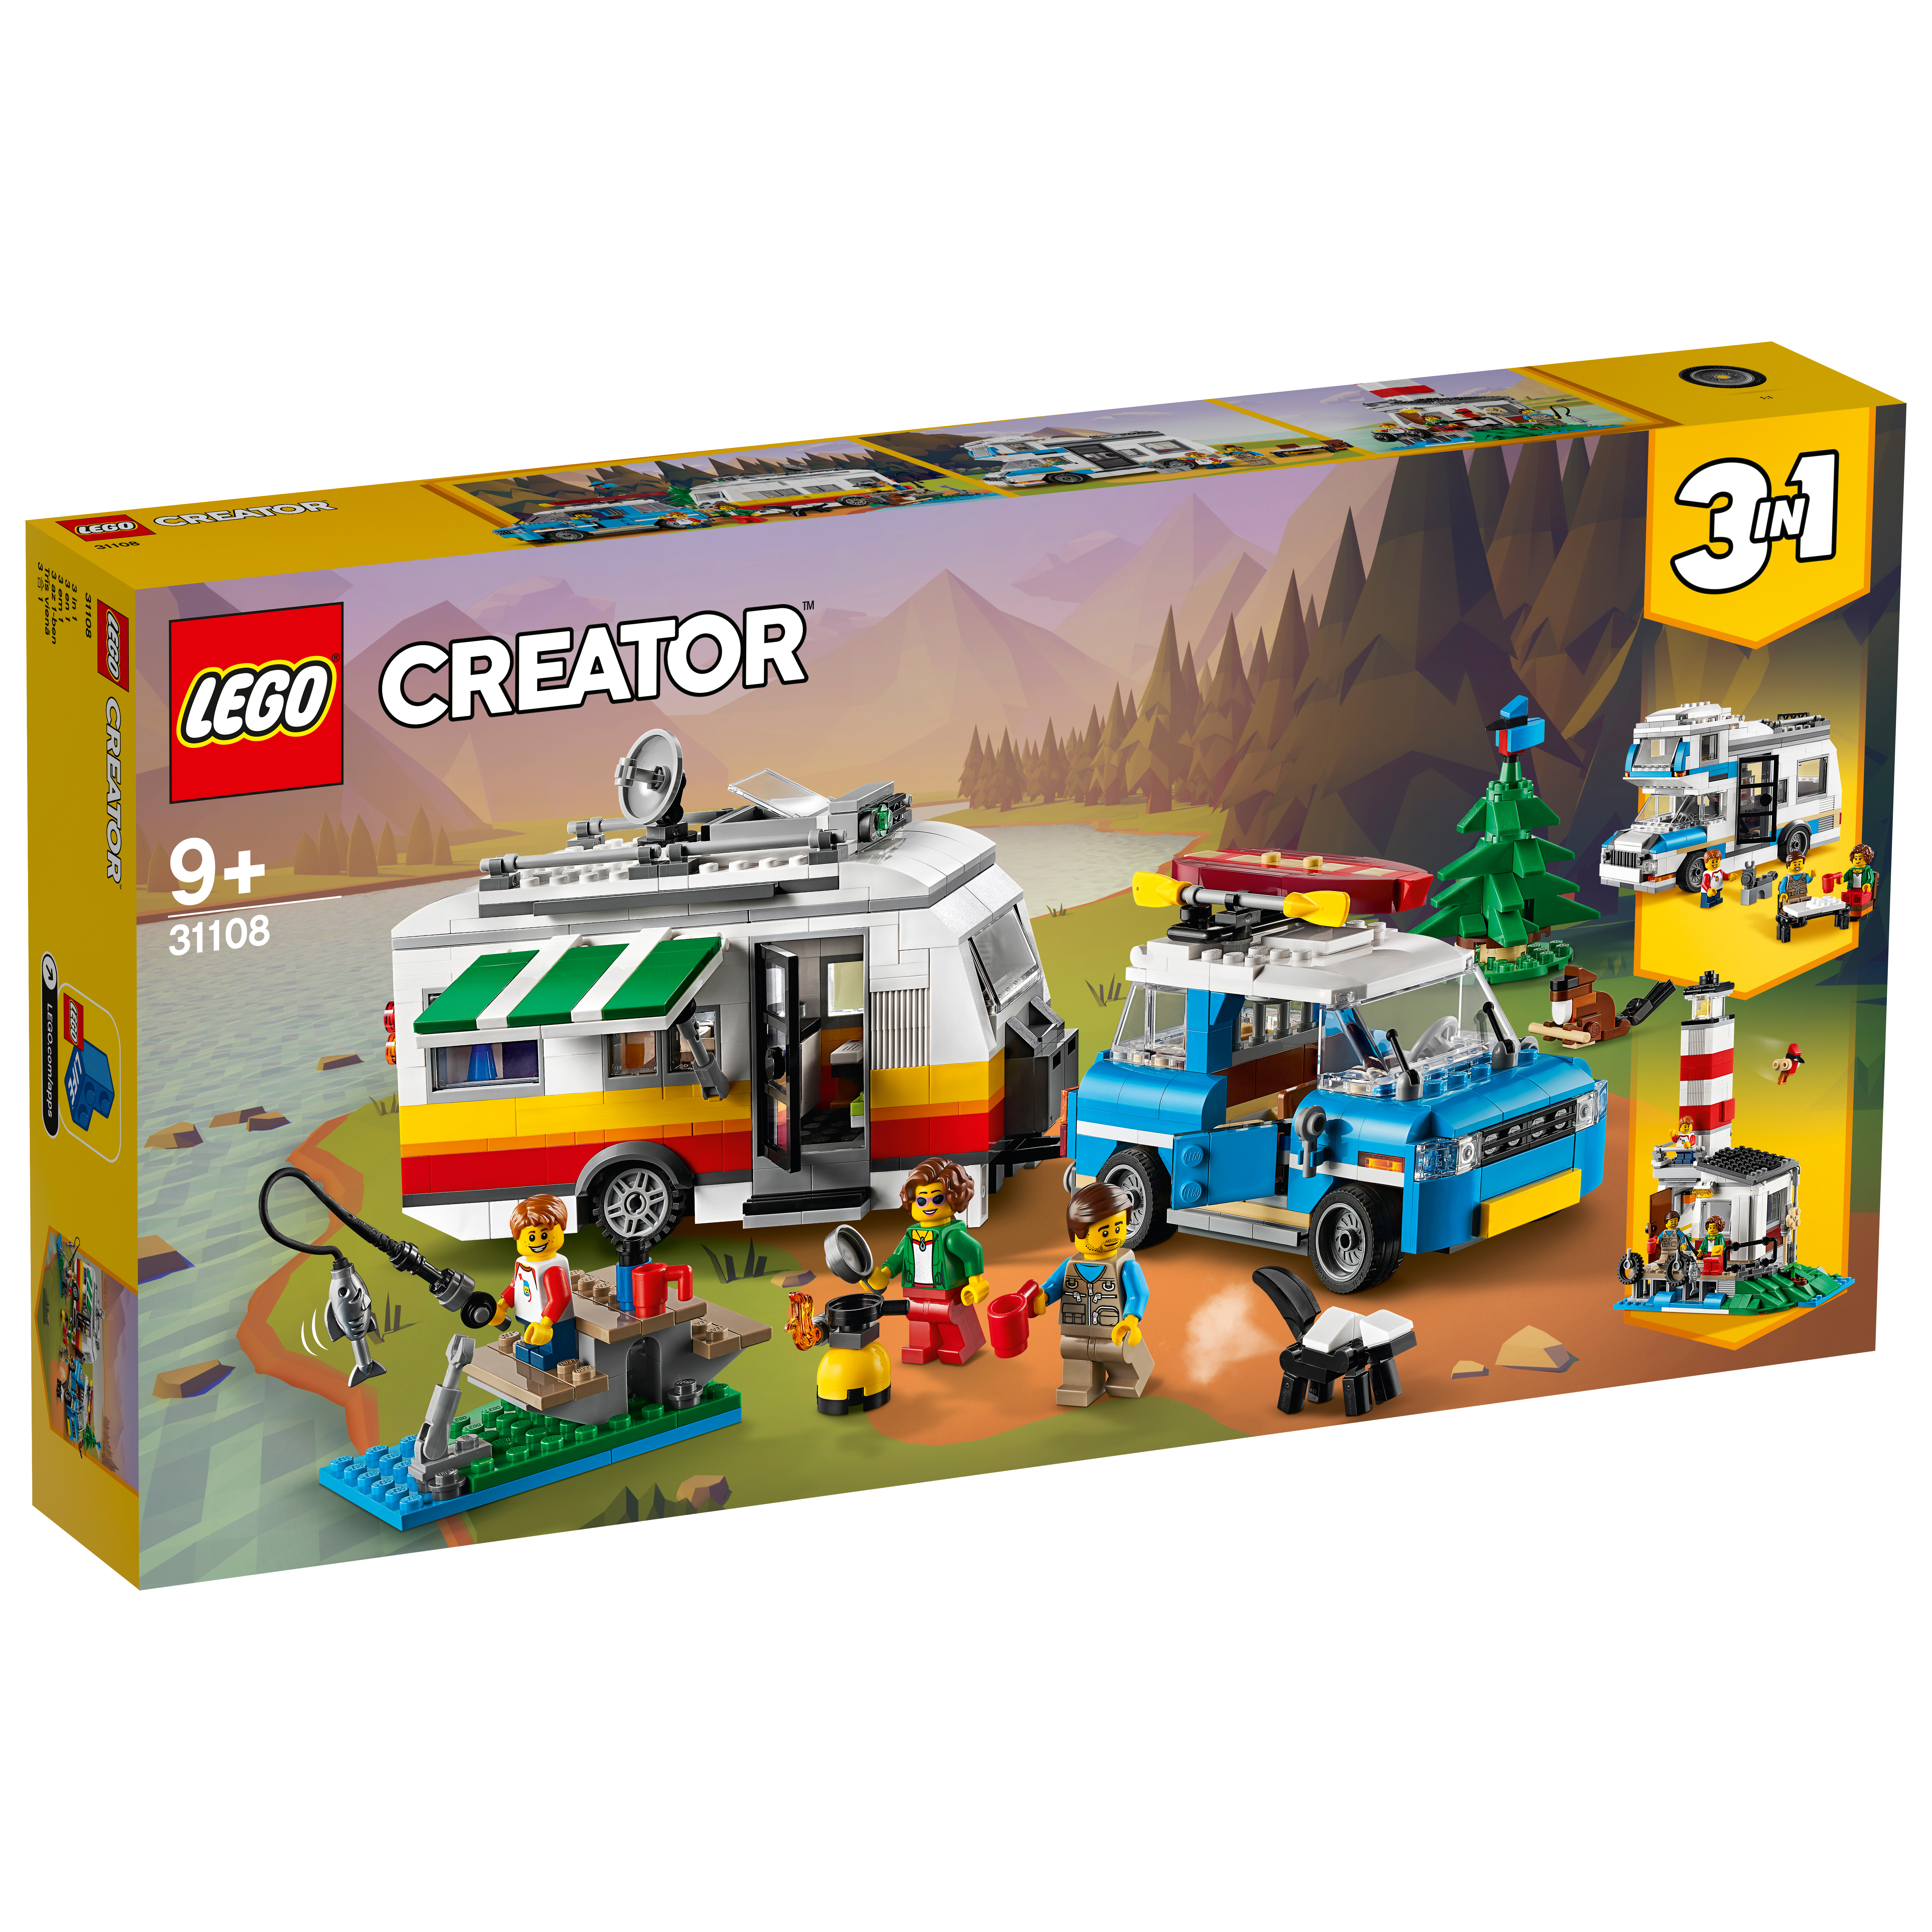 LEGO CREATOR 31108 VAKANTIE & CARAVAN - 411 1108 - 516636